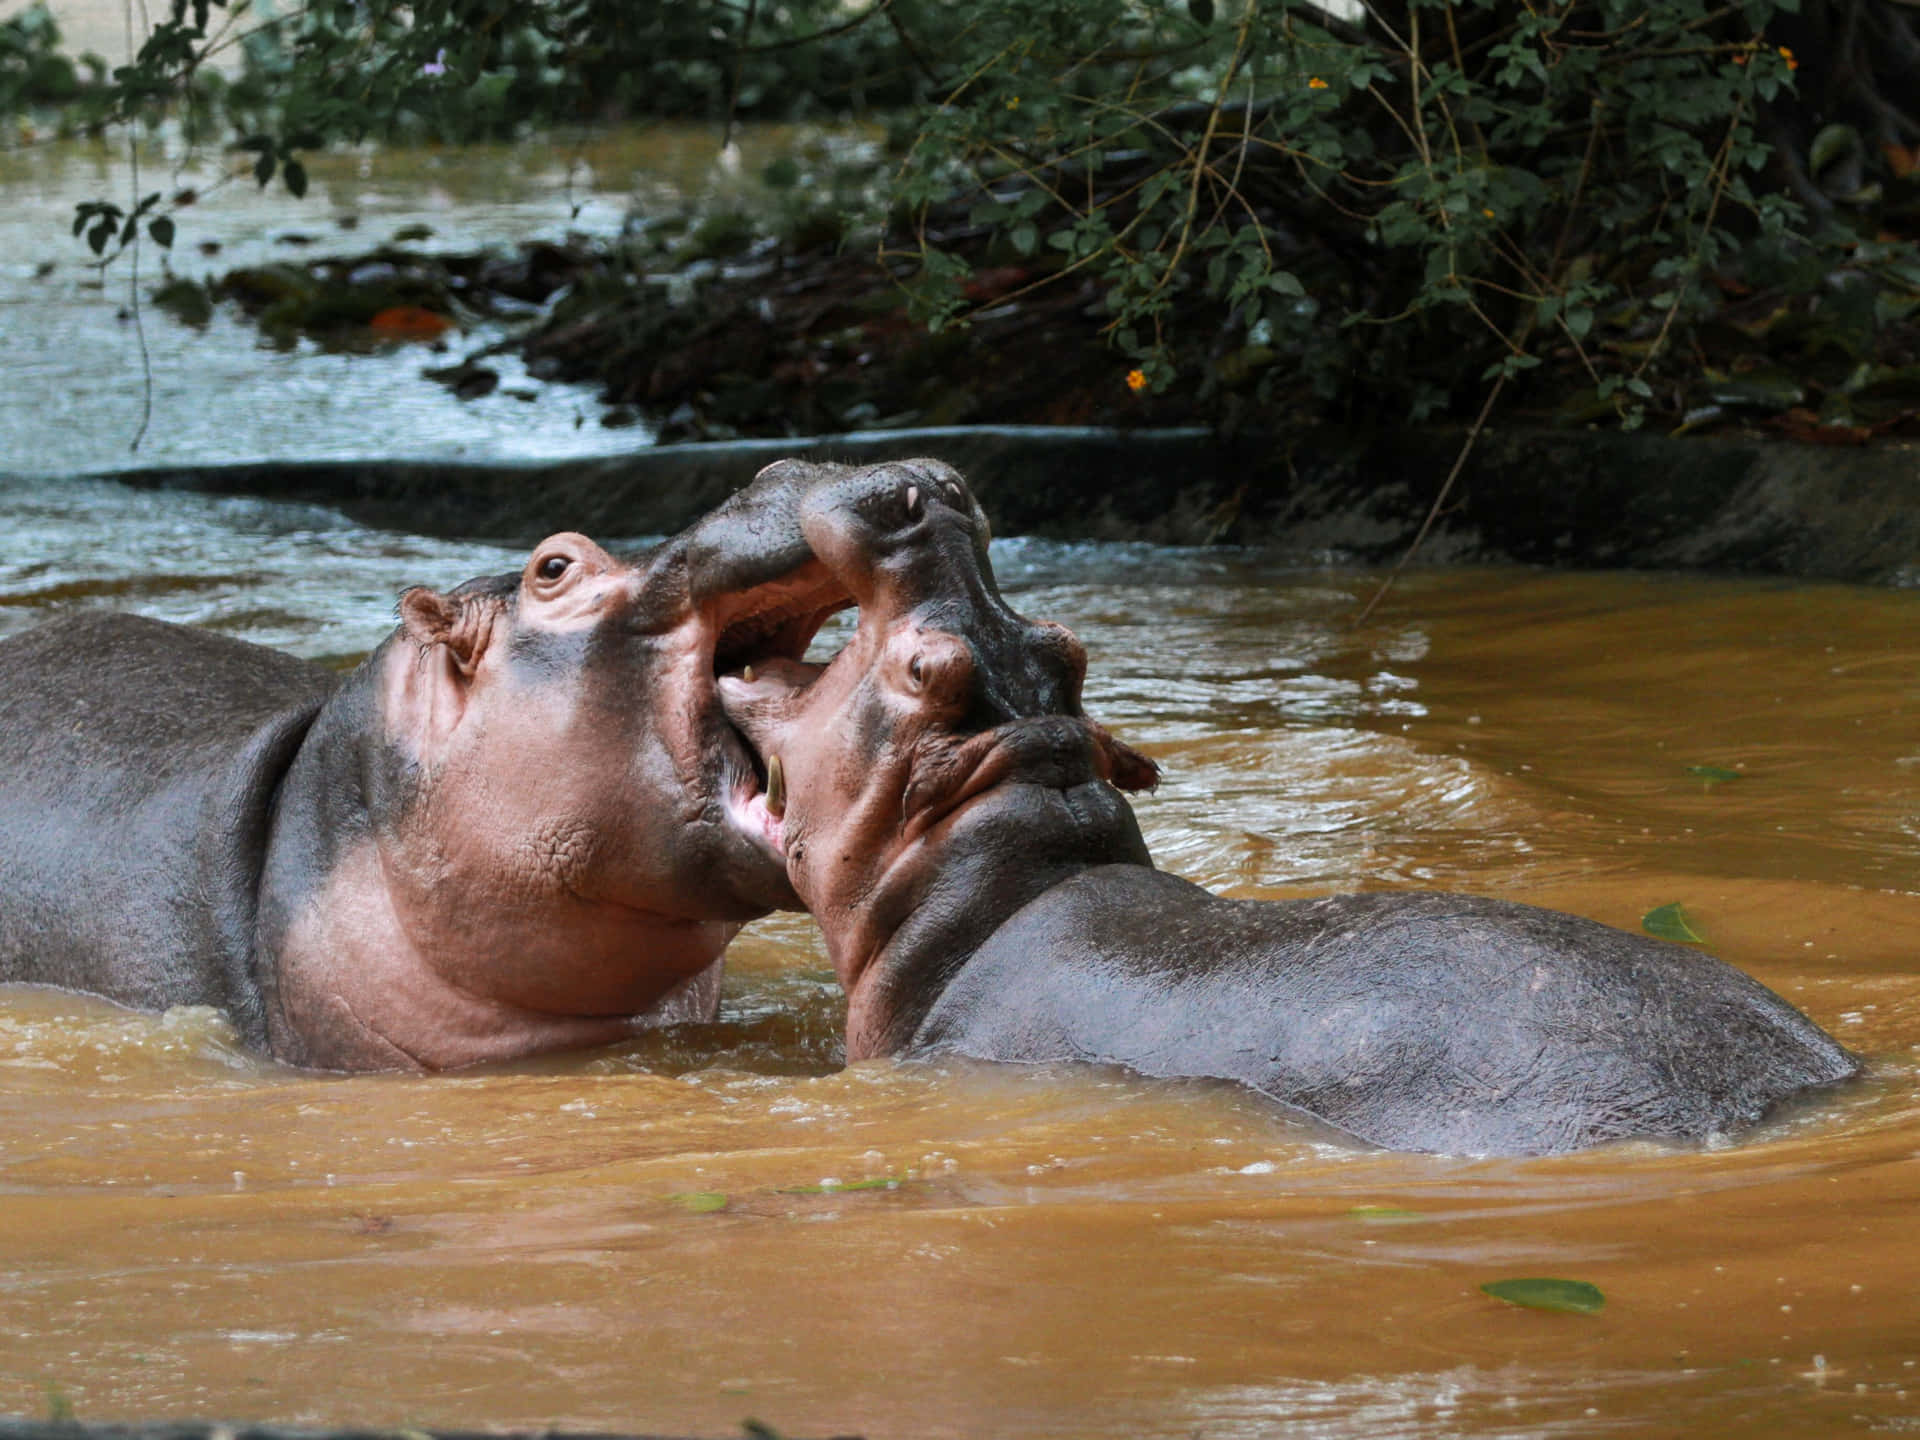 Imagende Un Hipopótamo Amigable Jugando En El Río.